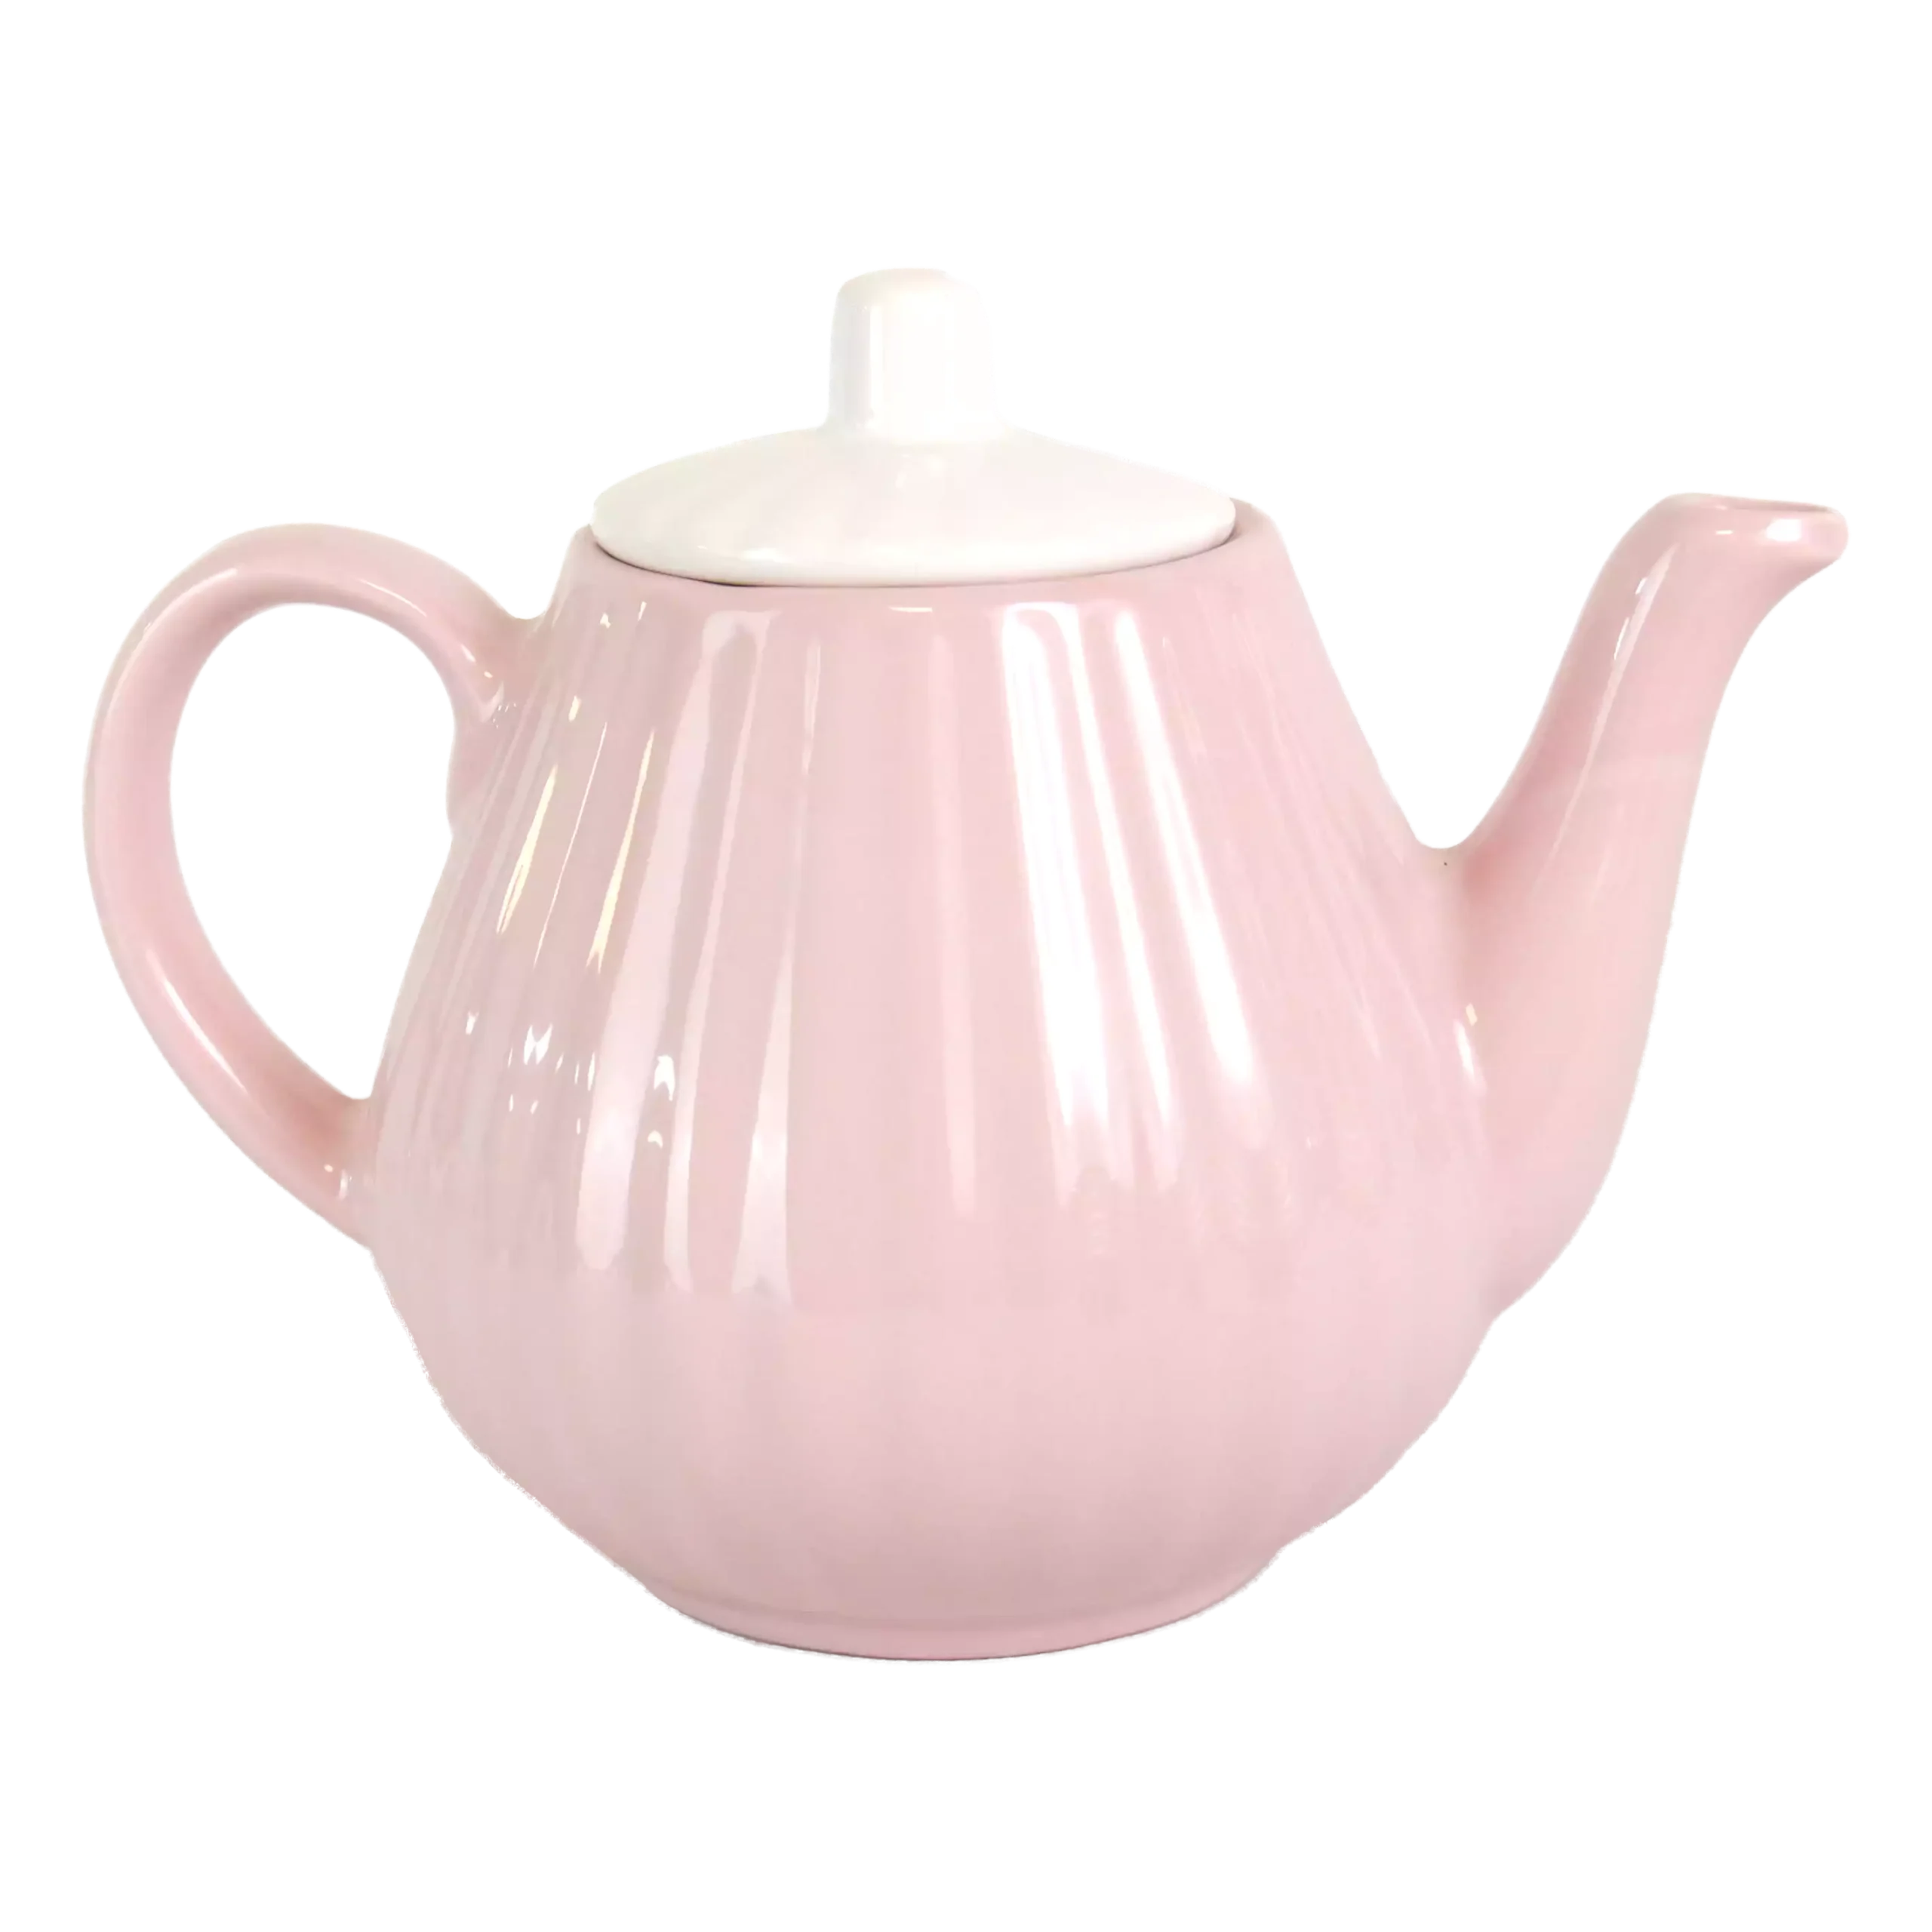 Baran model ceramic teapot